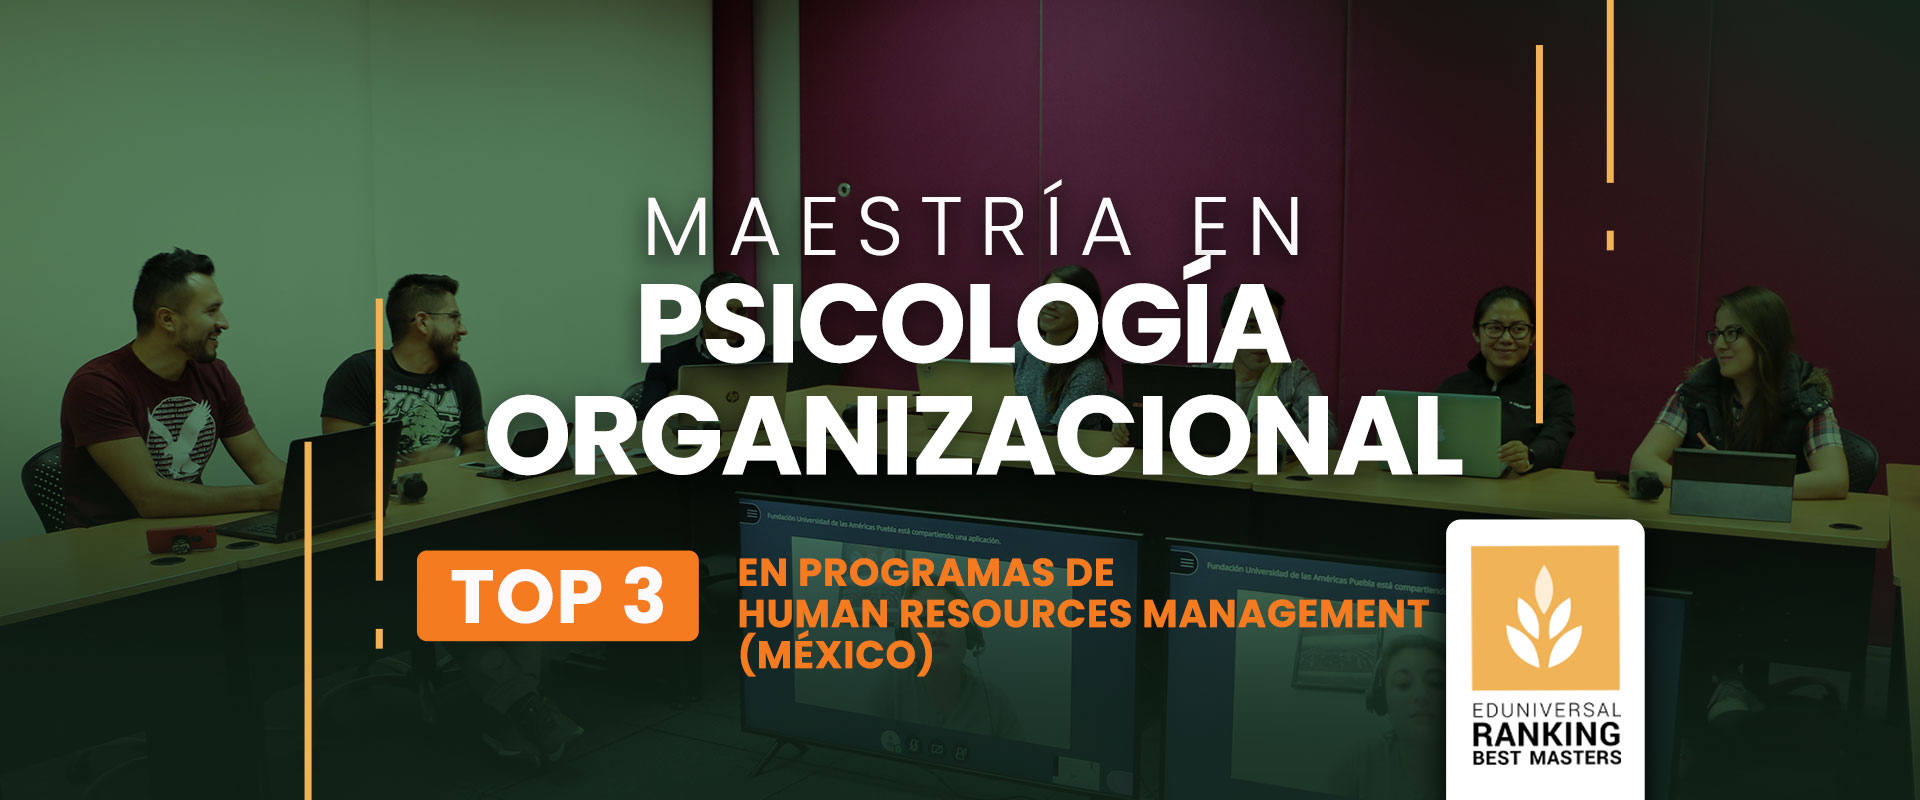 Maestría en Psicología Organizacional - Universidad de las Américas Puebla (UDLAP)